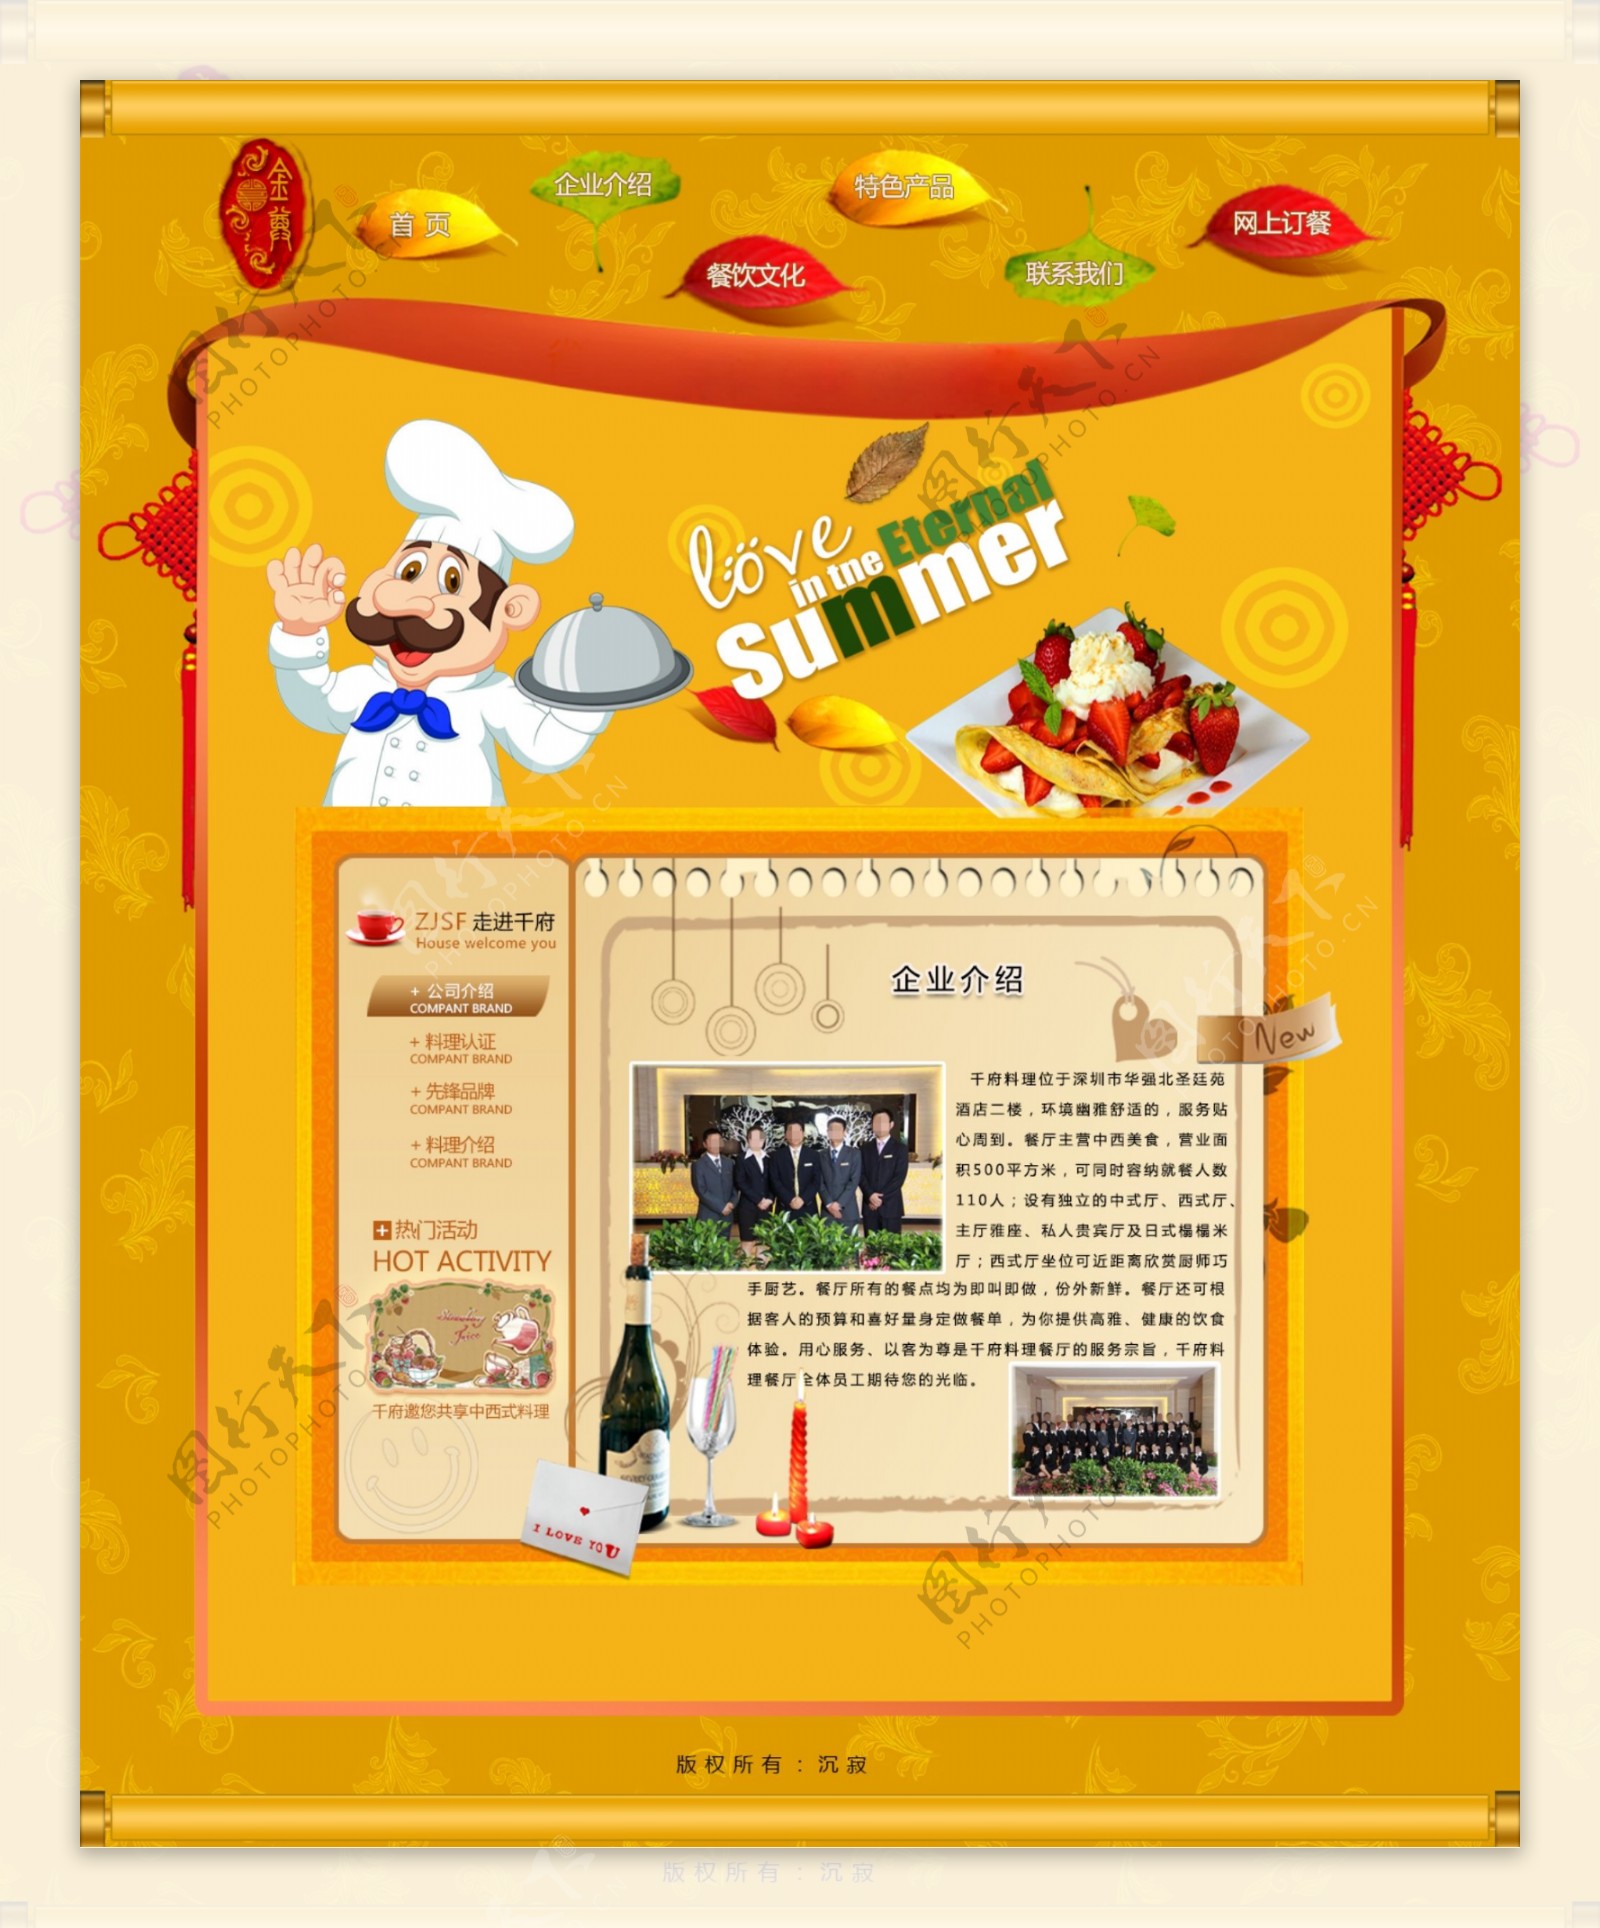 淘宝天猫食品餐饮美食素材黄色背景详情页面